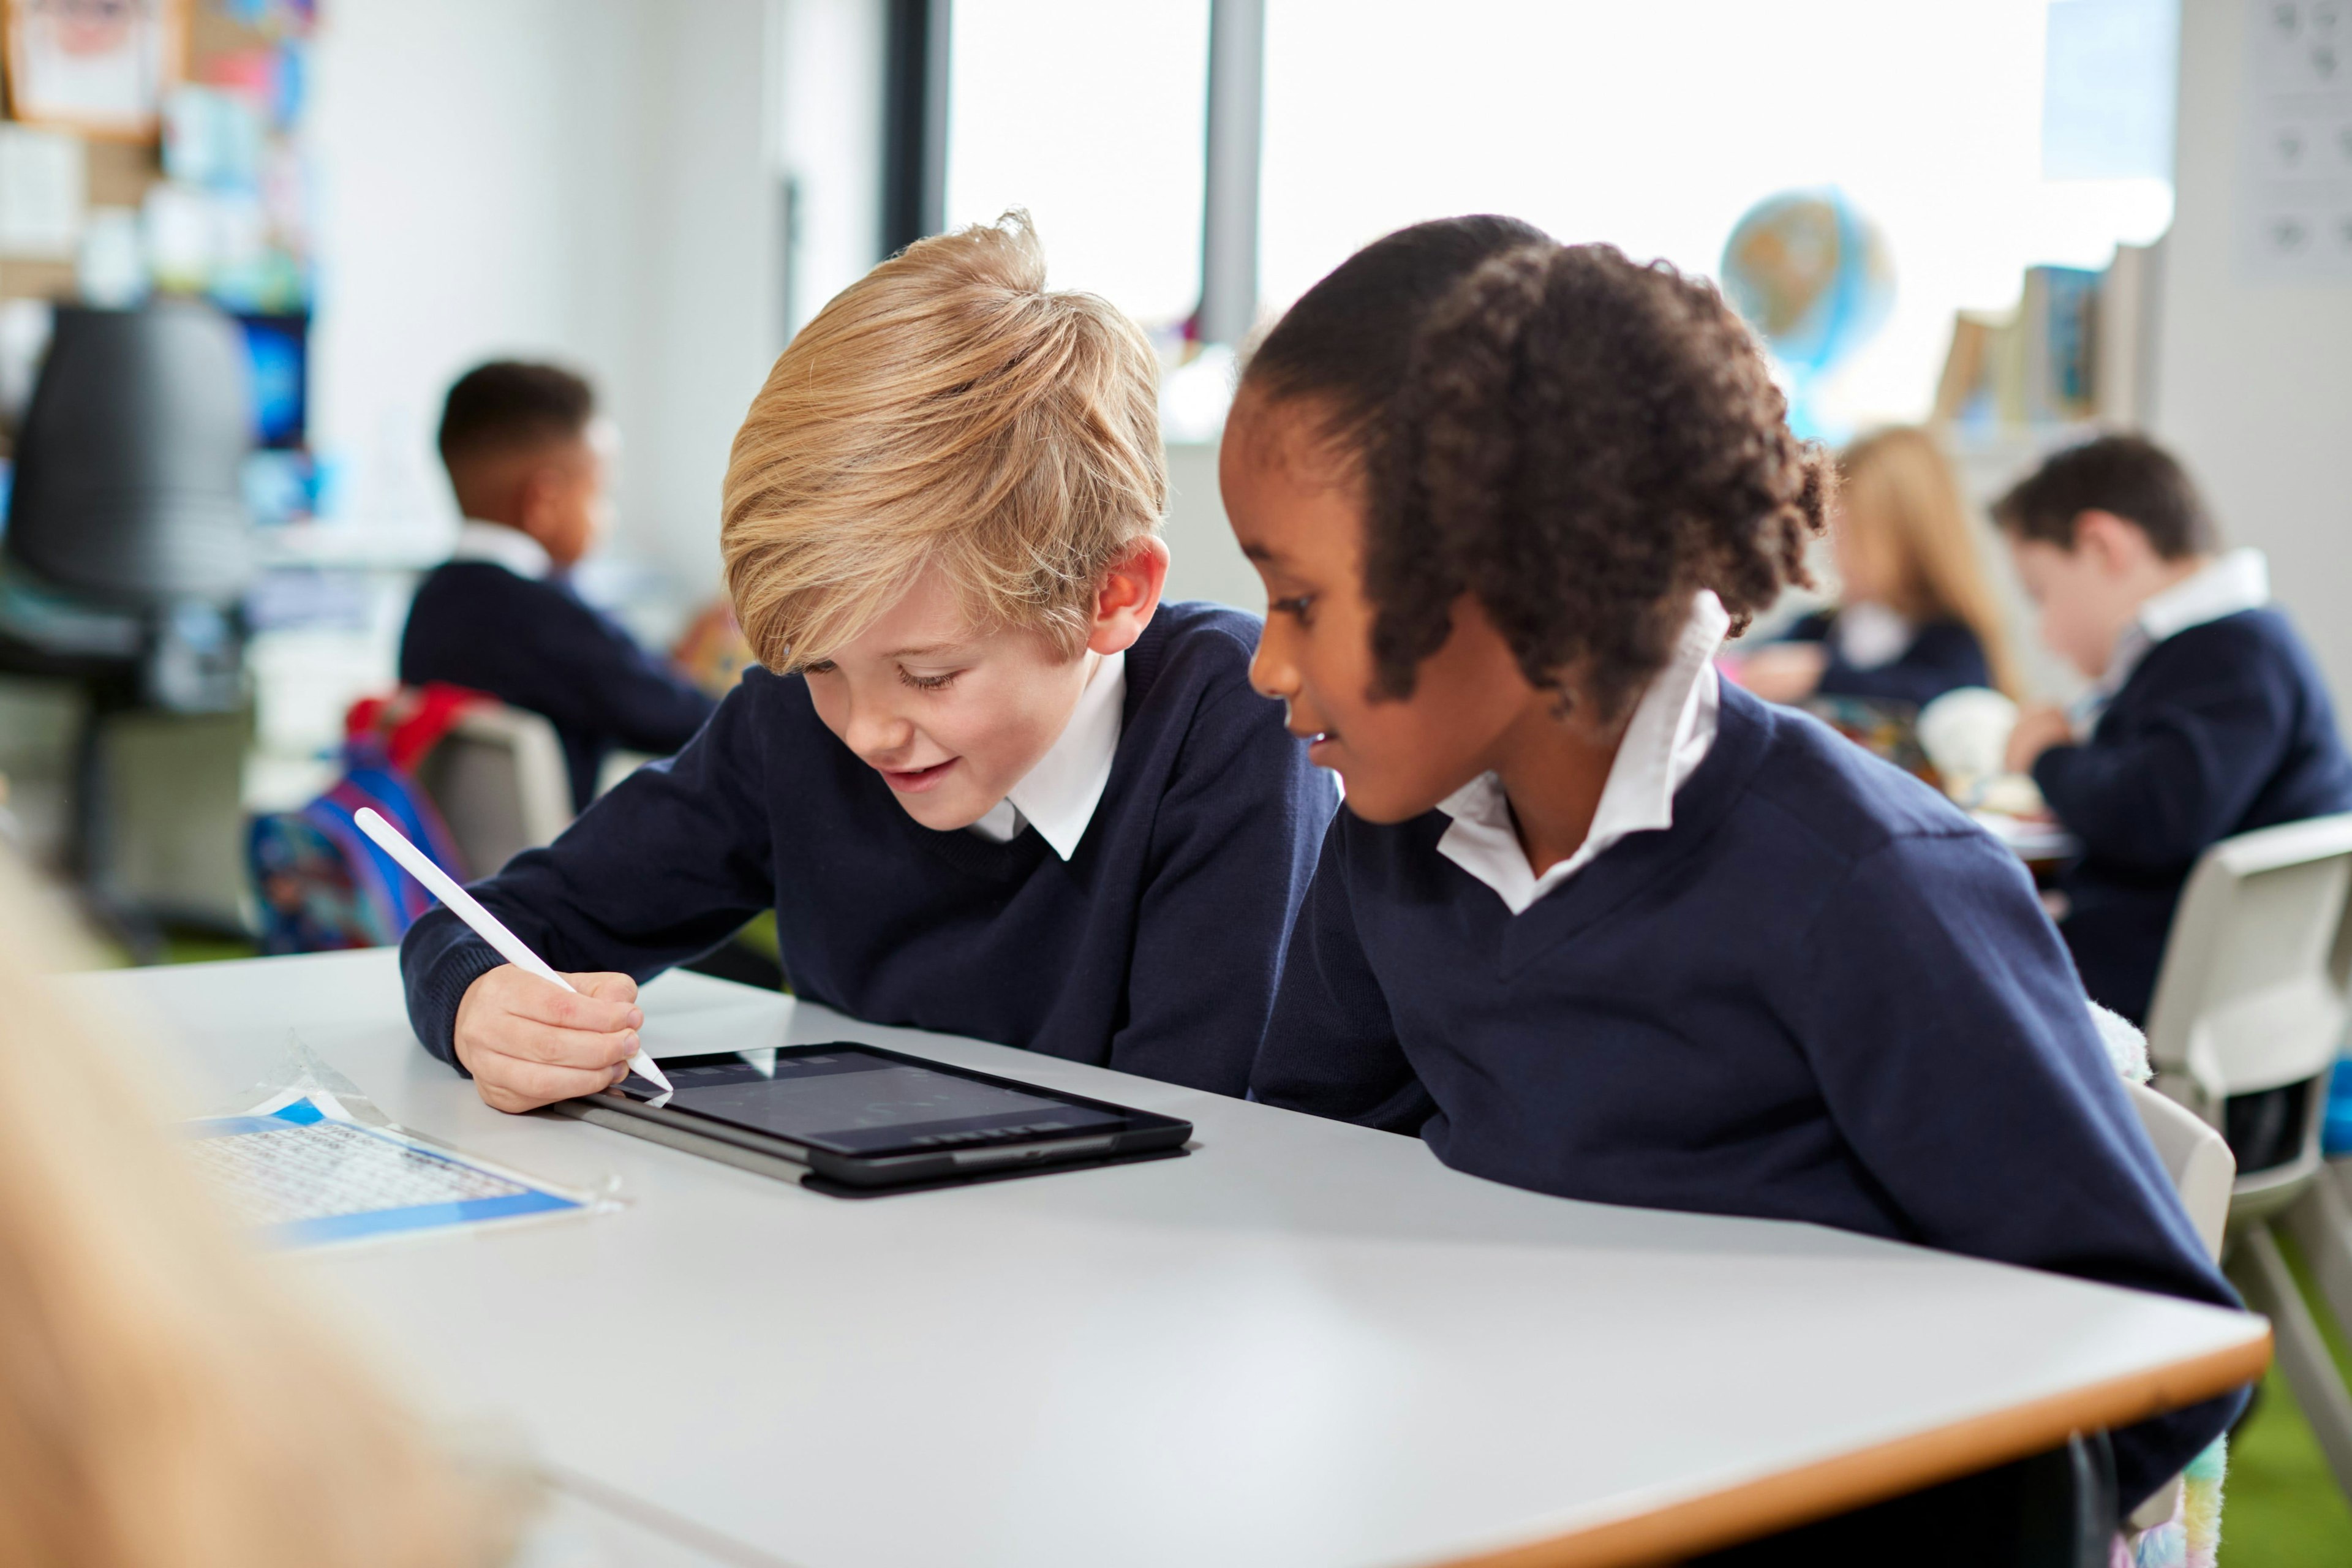 Two schoolchildren write on a tablet.